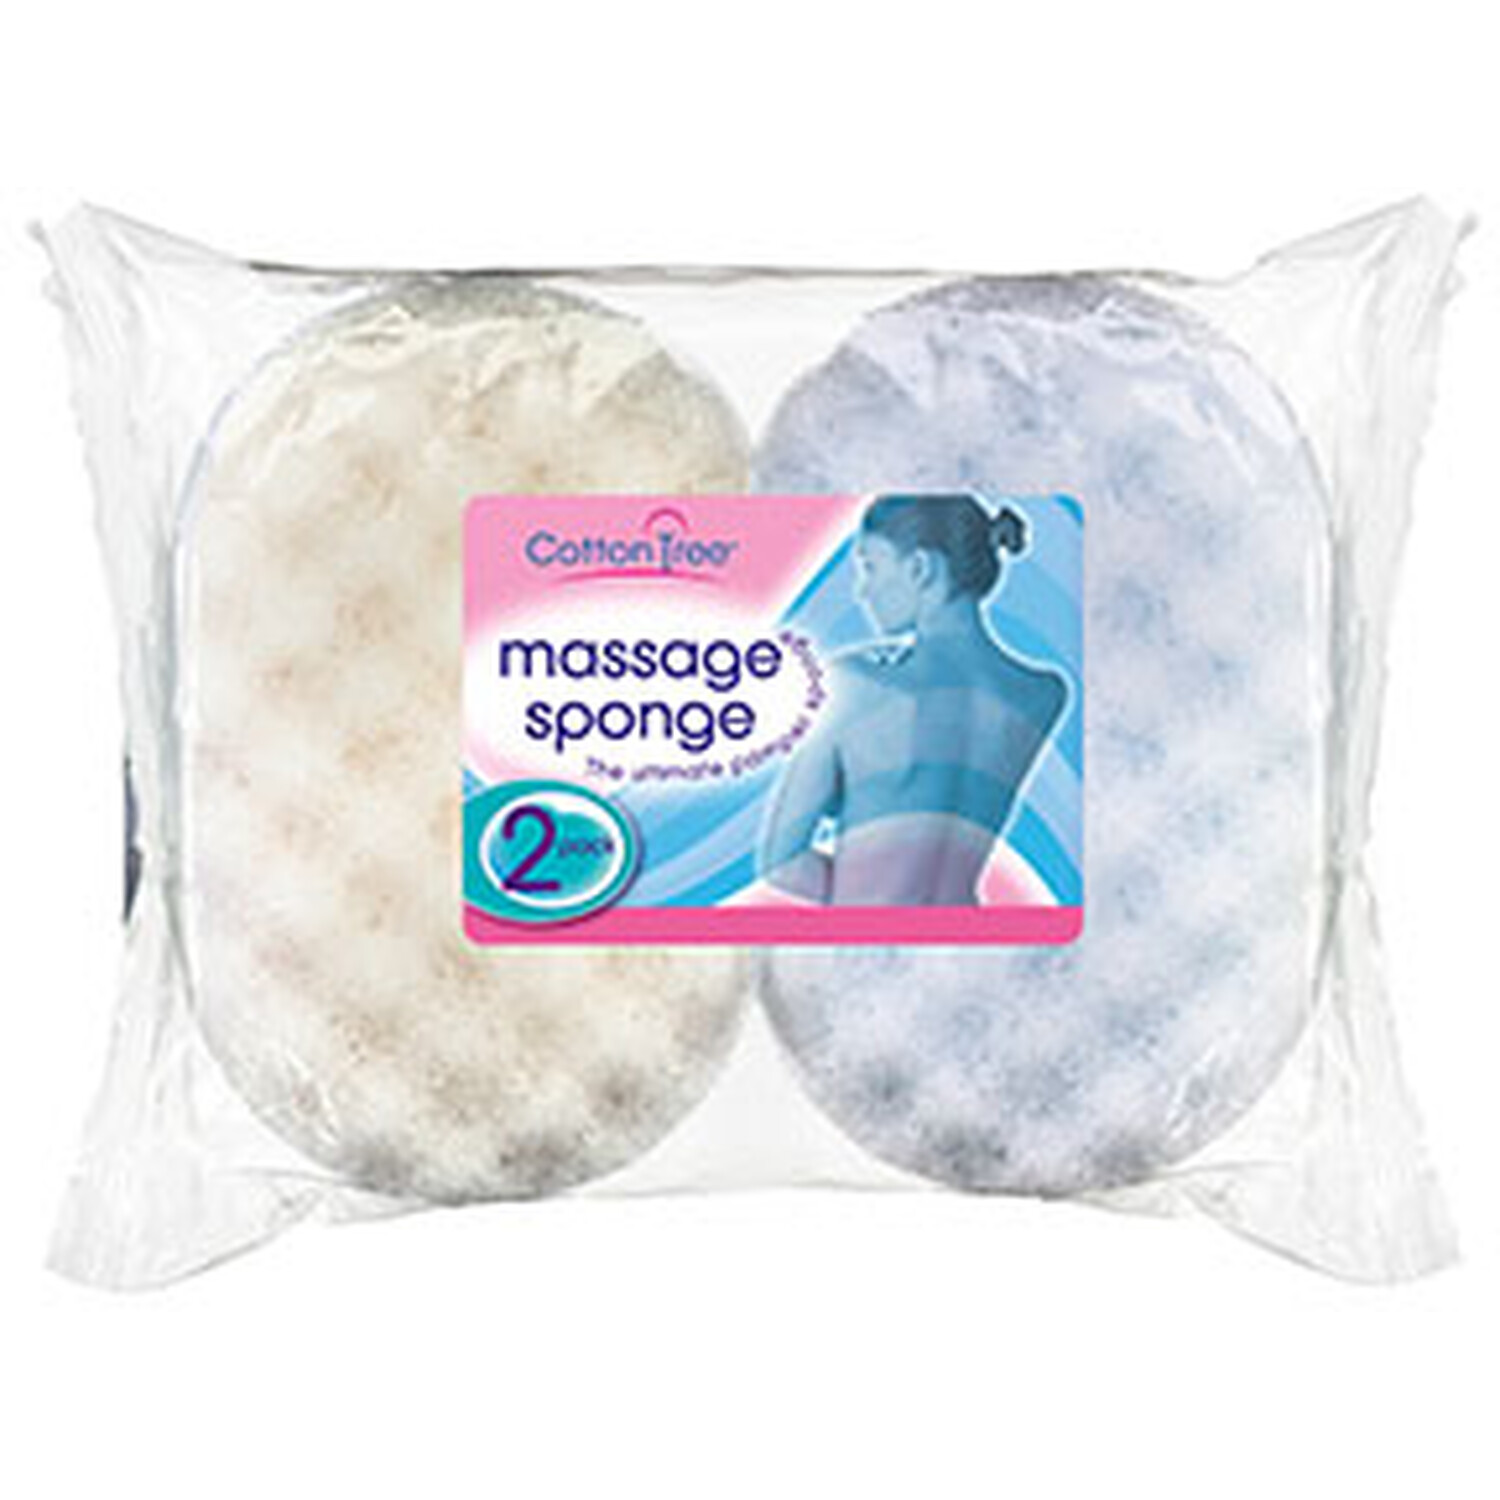 Pack of 2 Massage Sponges Image